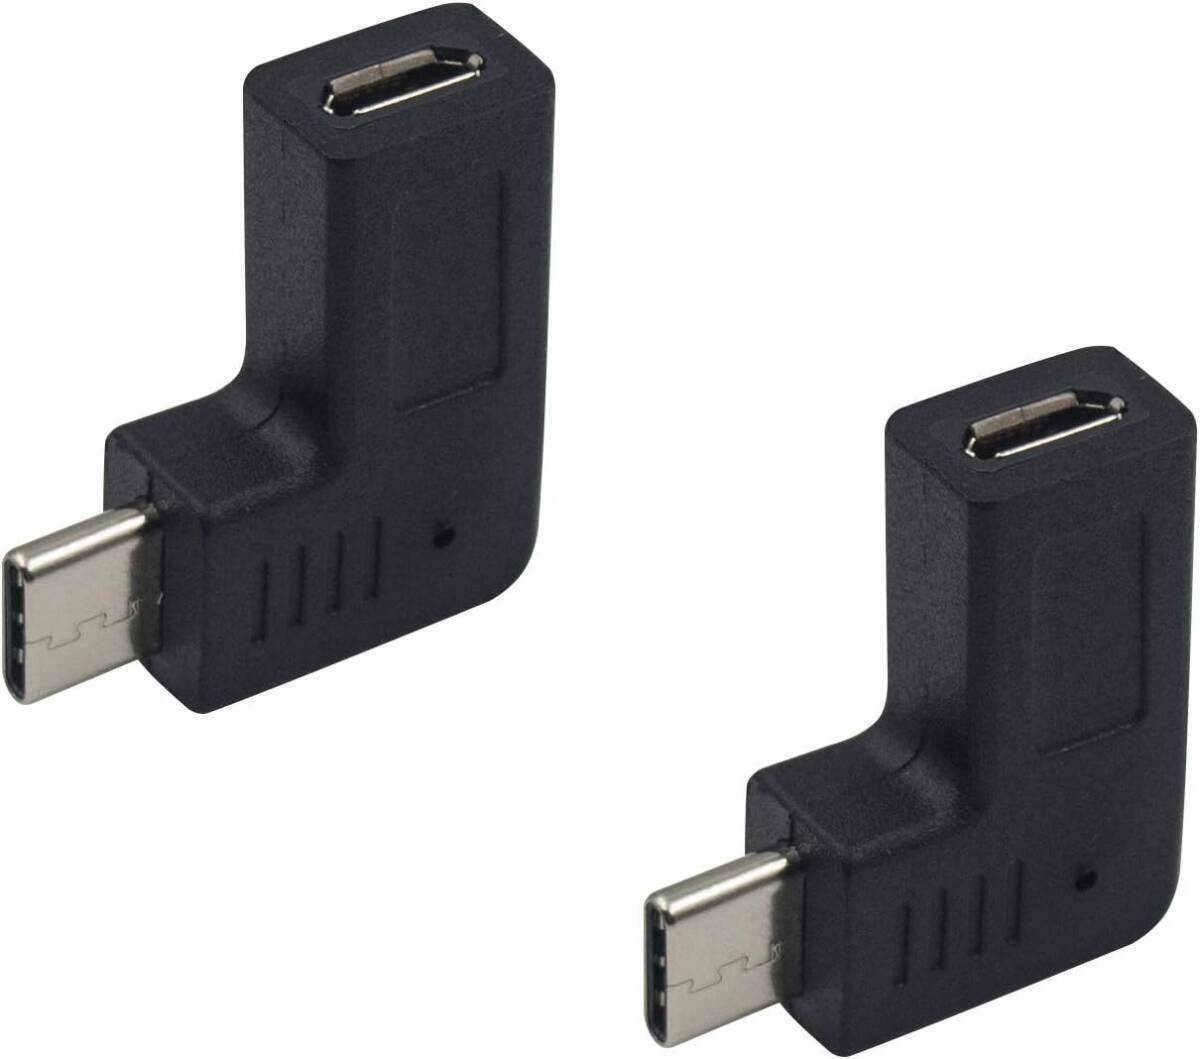 Duttek Micro USB to USB Type C 変換 アダプタ 2個 L字型 マイクロUSB メス to タイプ-C オス 